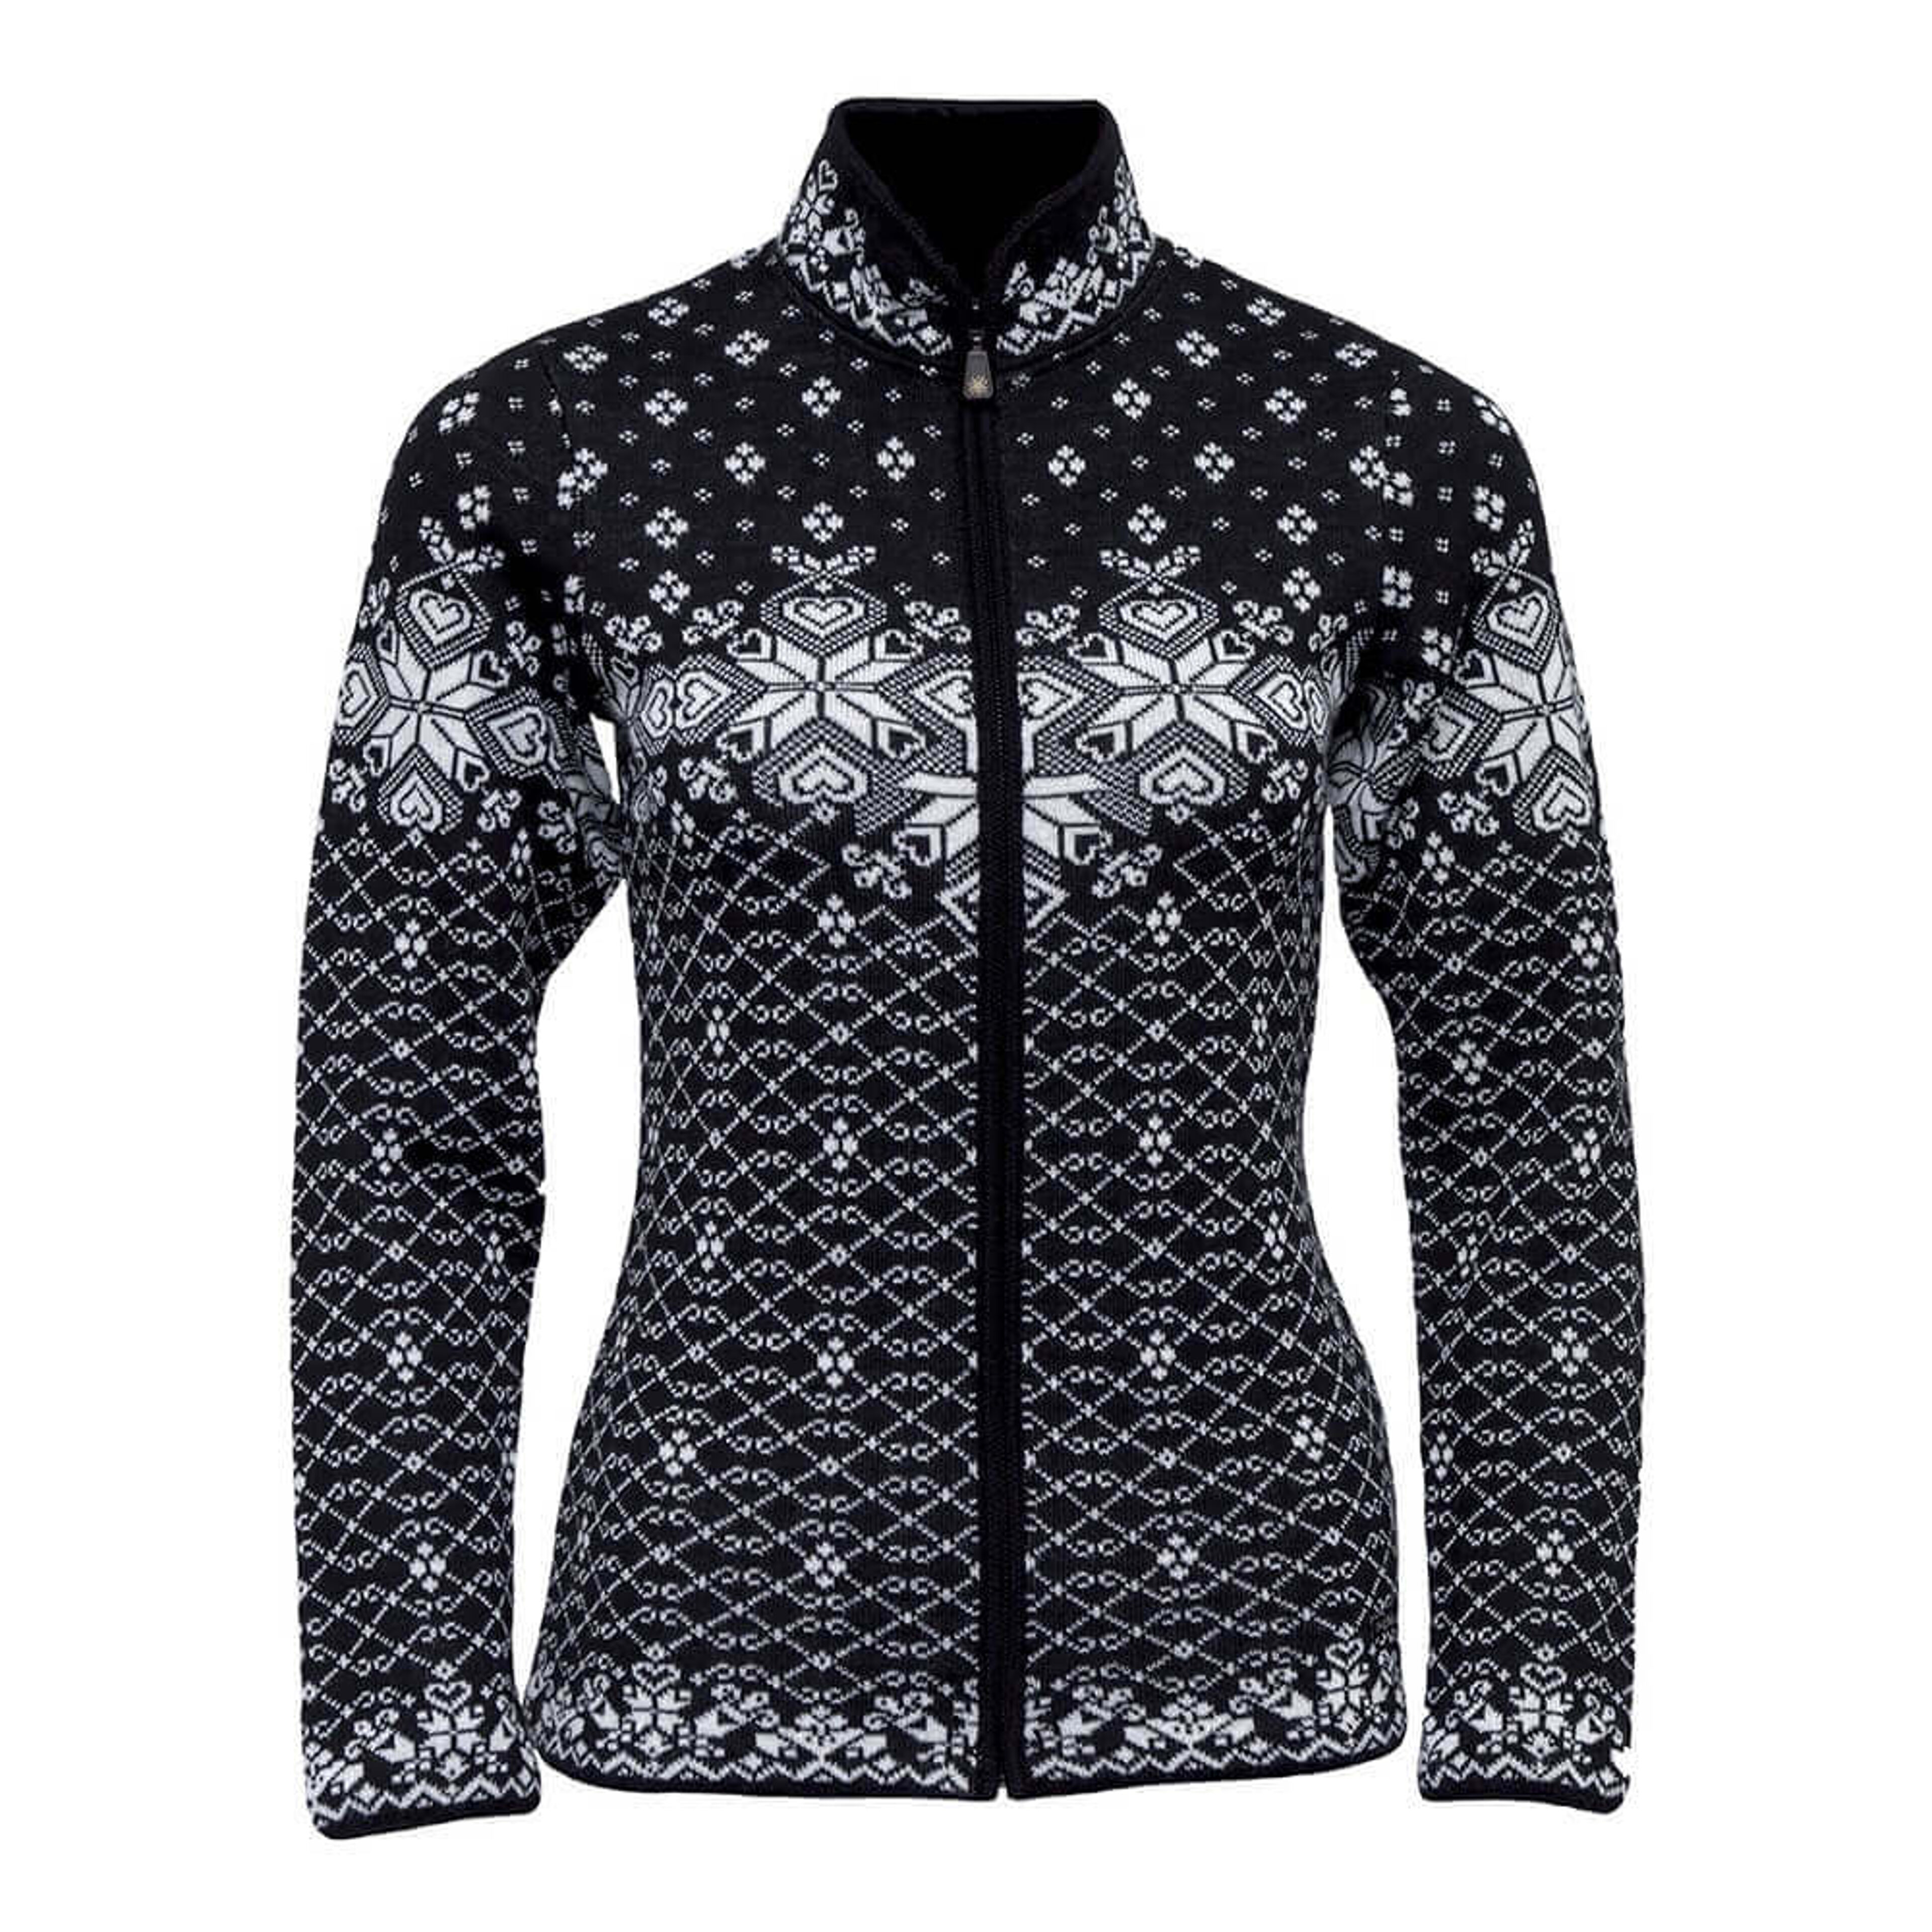 SportCool Women’s sweater with Norwegian pattern (380)